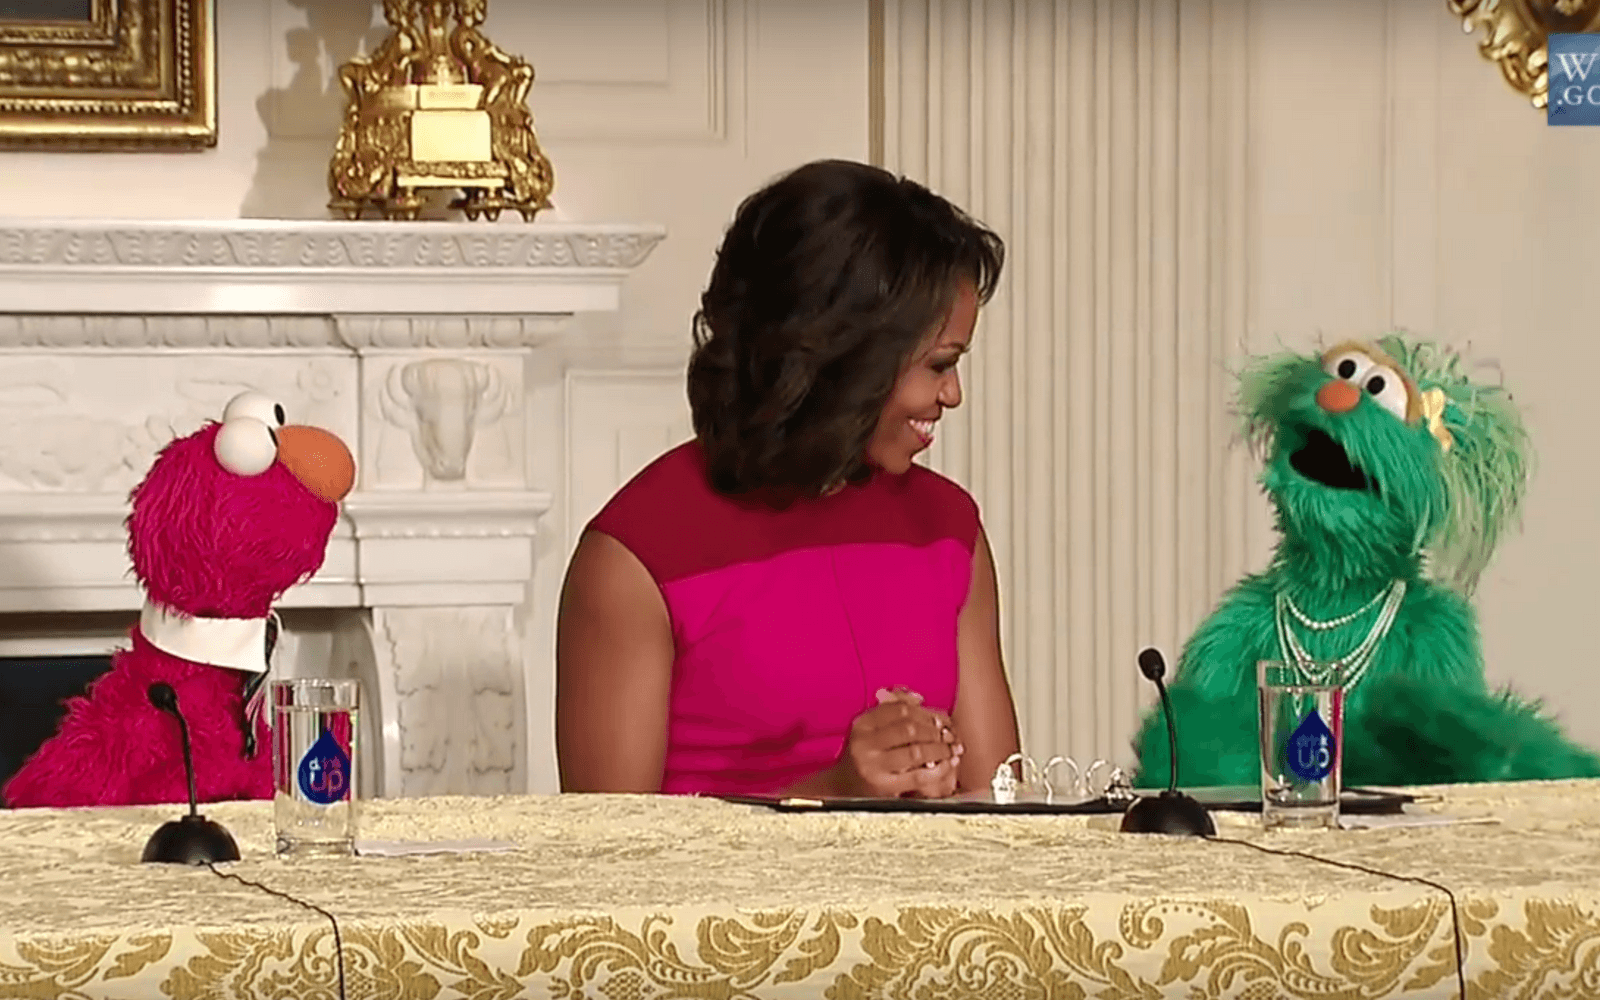 Let's move är ytterligare ett projekt initierat av Michelle Obama i hennes ambition att uppmana unga amerikaner att röra på sig mer. Hon har bland annat fått hjälp av Elmo från Sesame Street som plötsligt dök upp på en presskonferens.